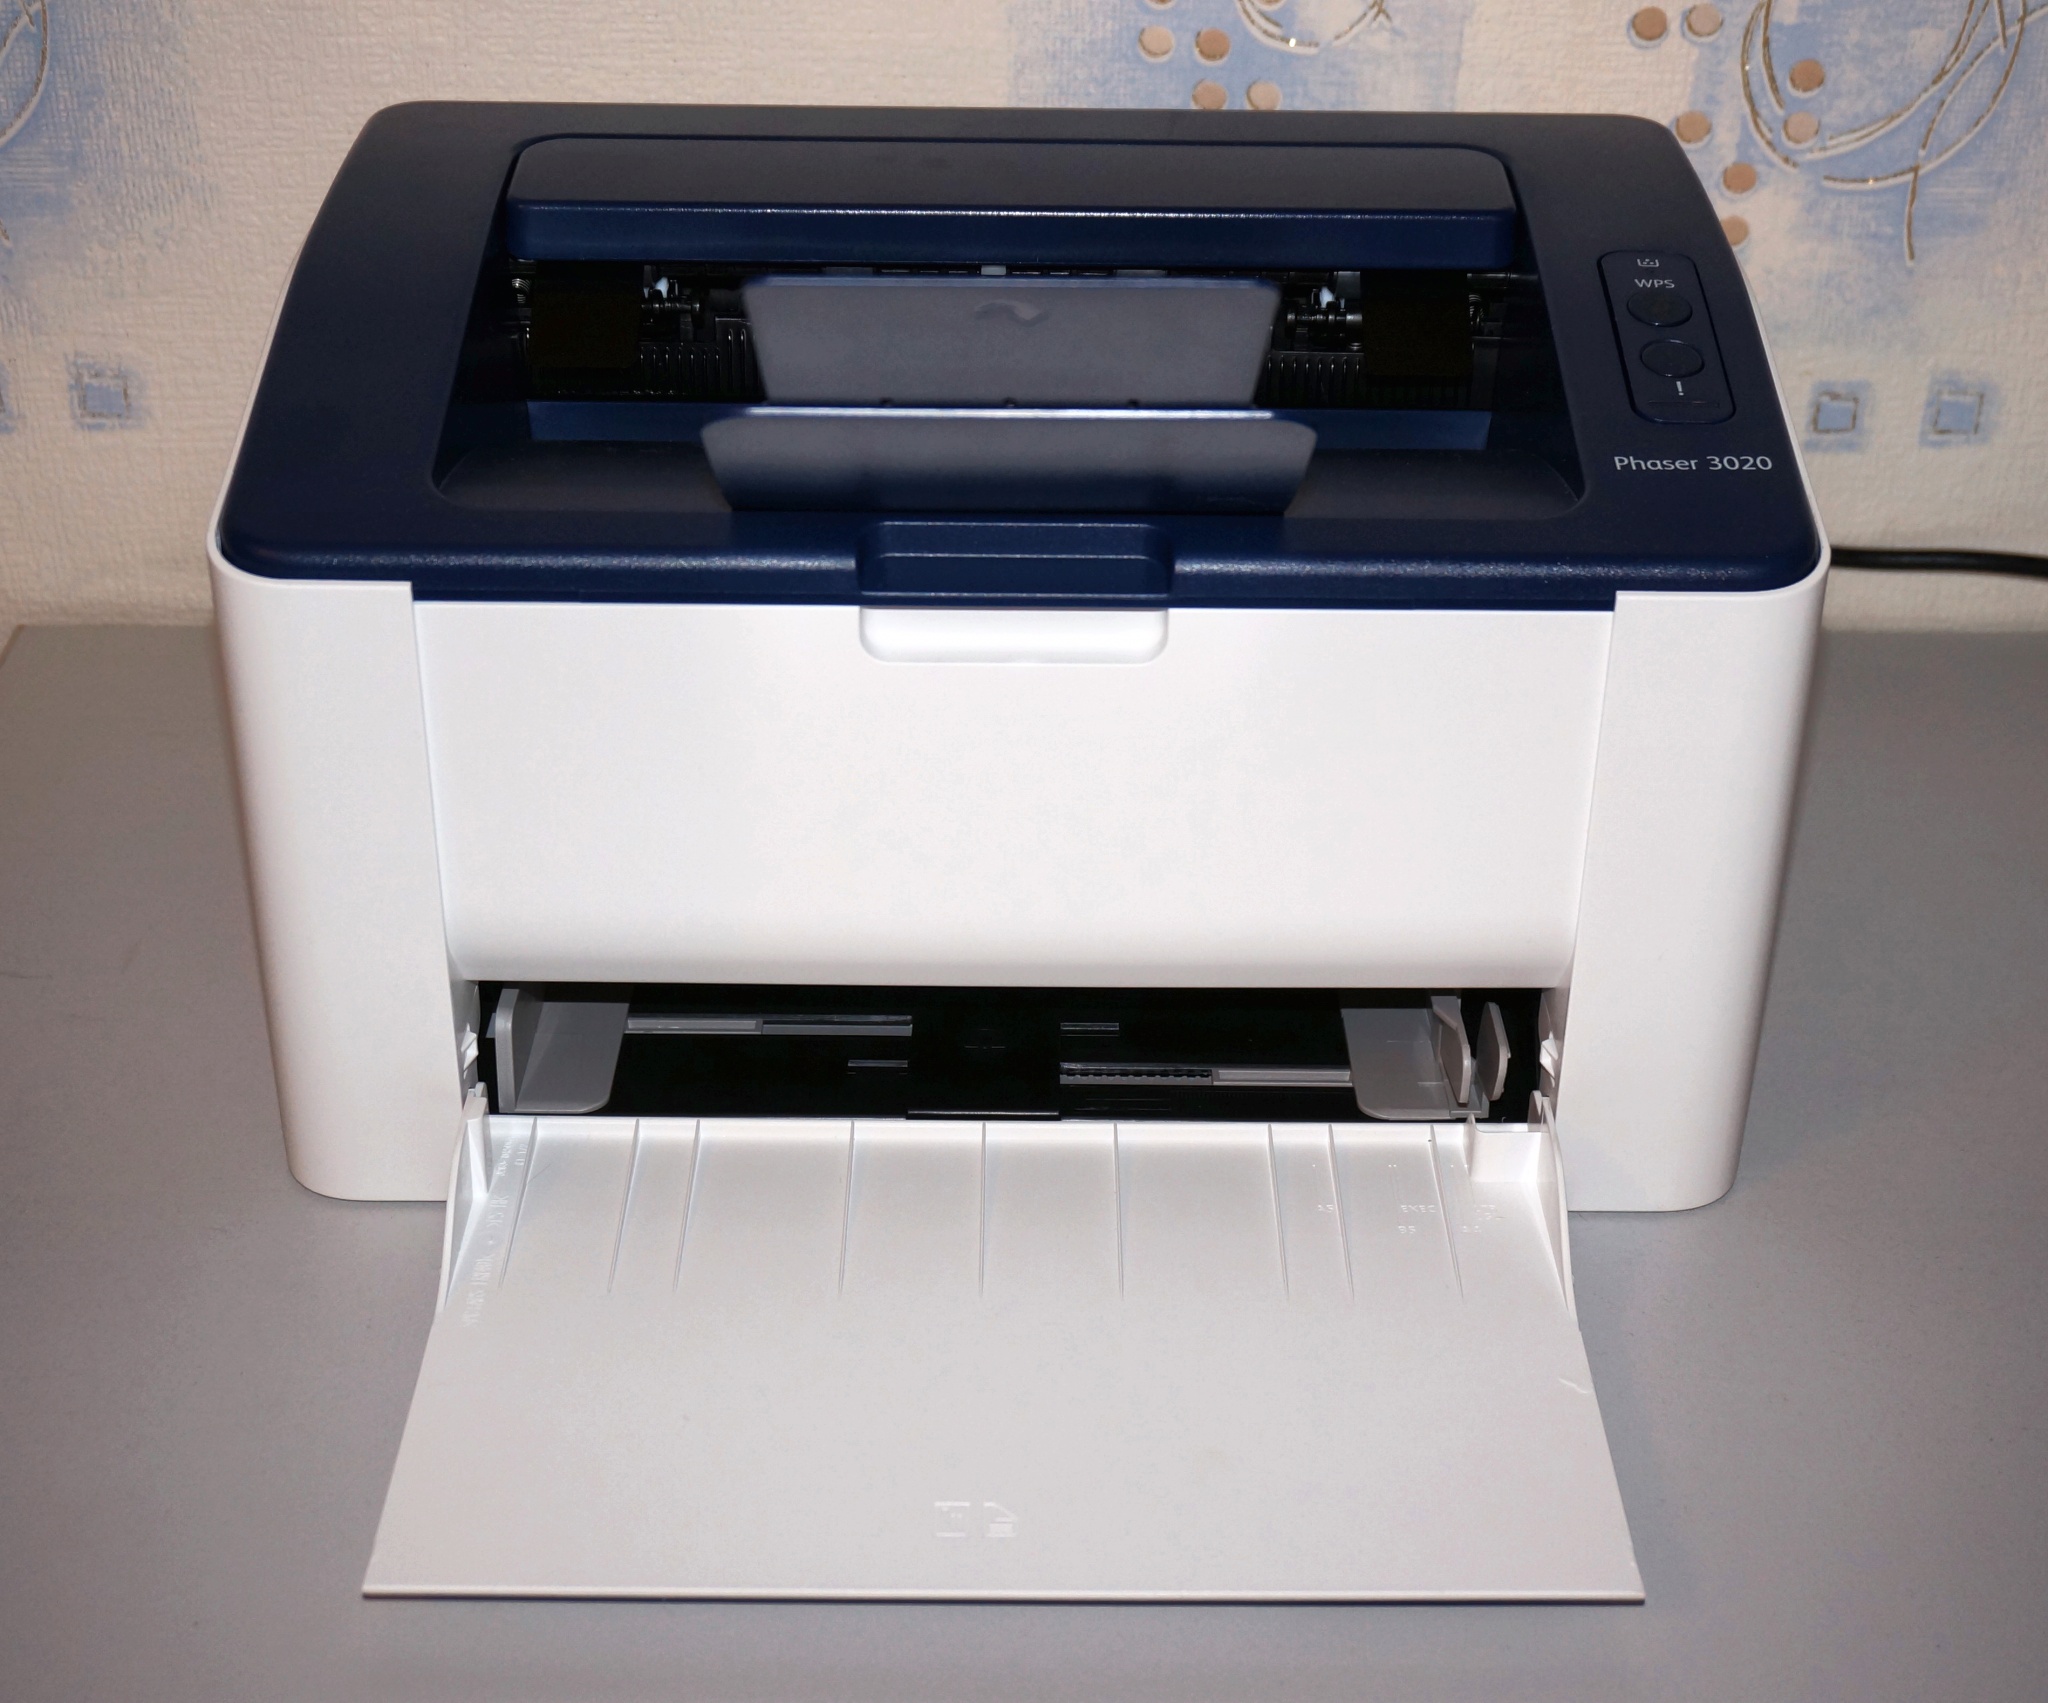 Купить принтер xerox phaser 3020. Принтер ксерокс 3020. Xerox принтер лазерный 3020. Принтер Xerox Printer Phaser 3020bi. Xerox Phaser 3020bi.